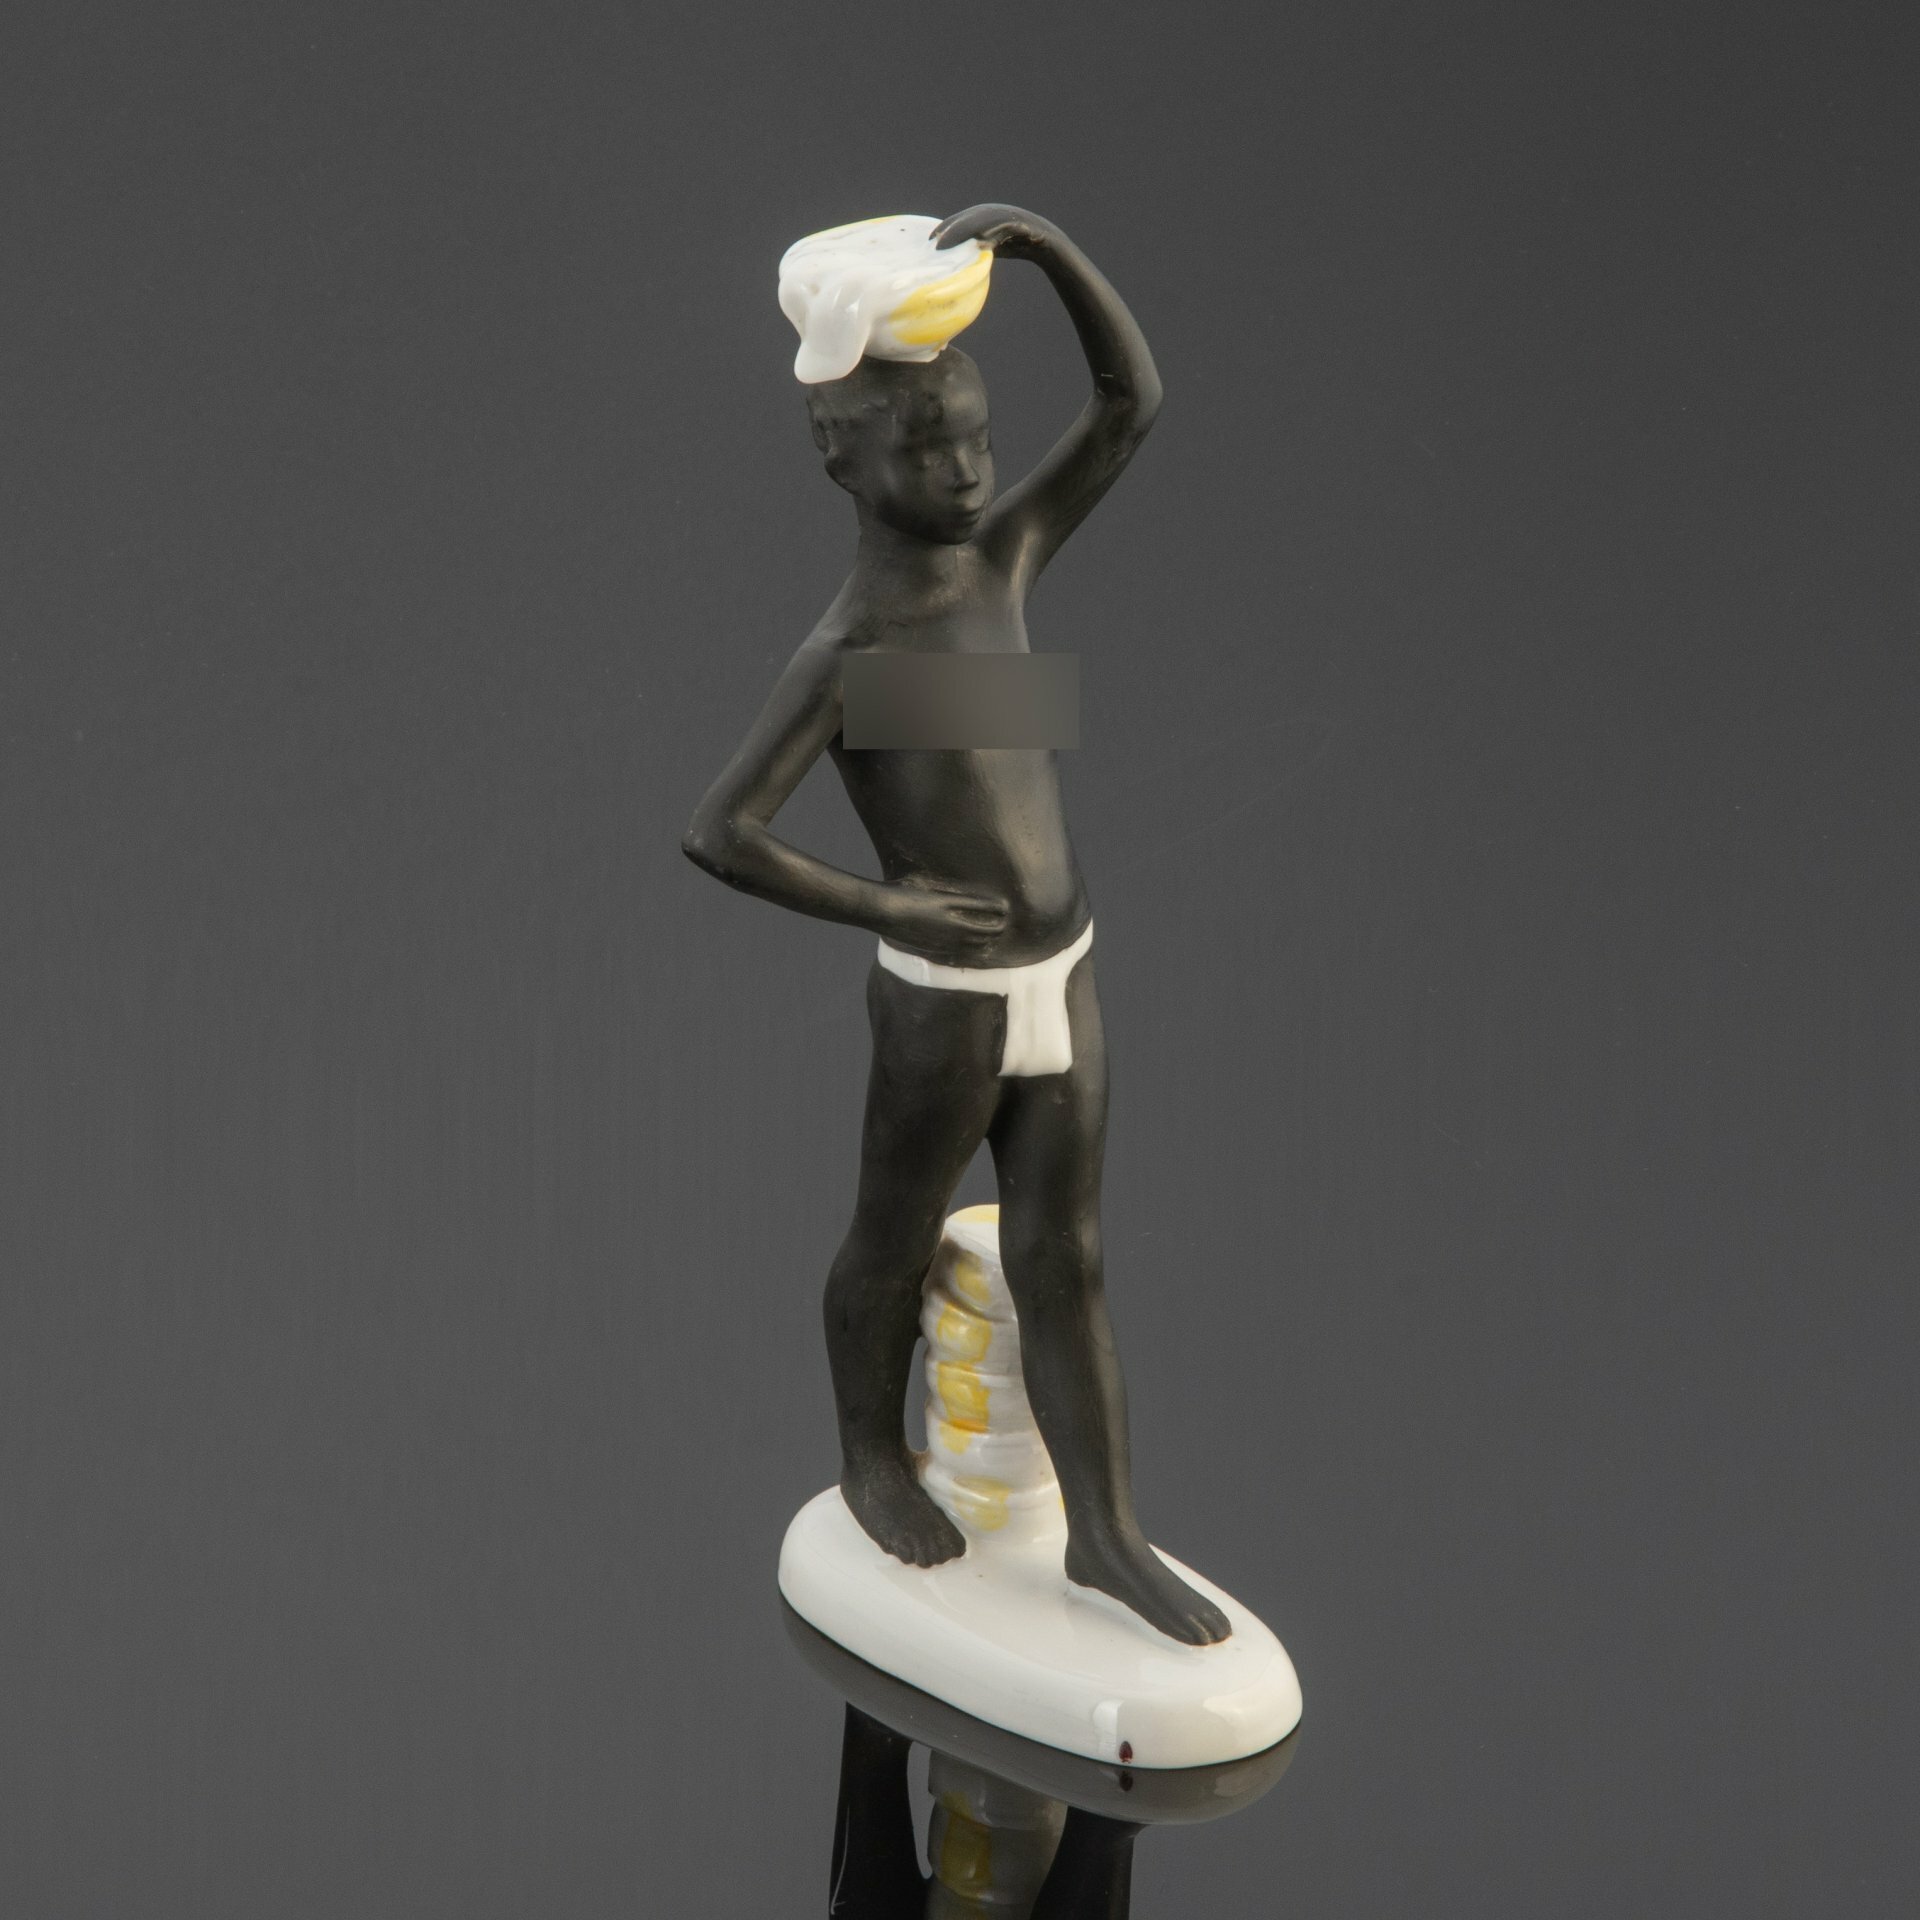 Статуэтка "Африка" (мальчик-негр с корзиной на голове) скульптор Г. С. Столбова